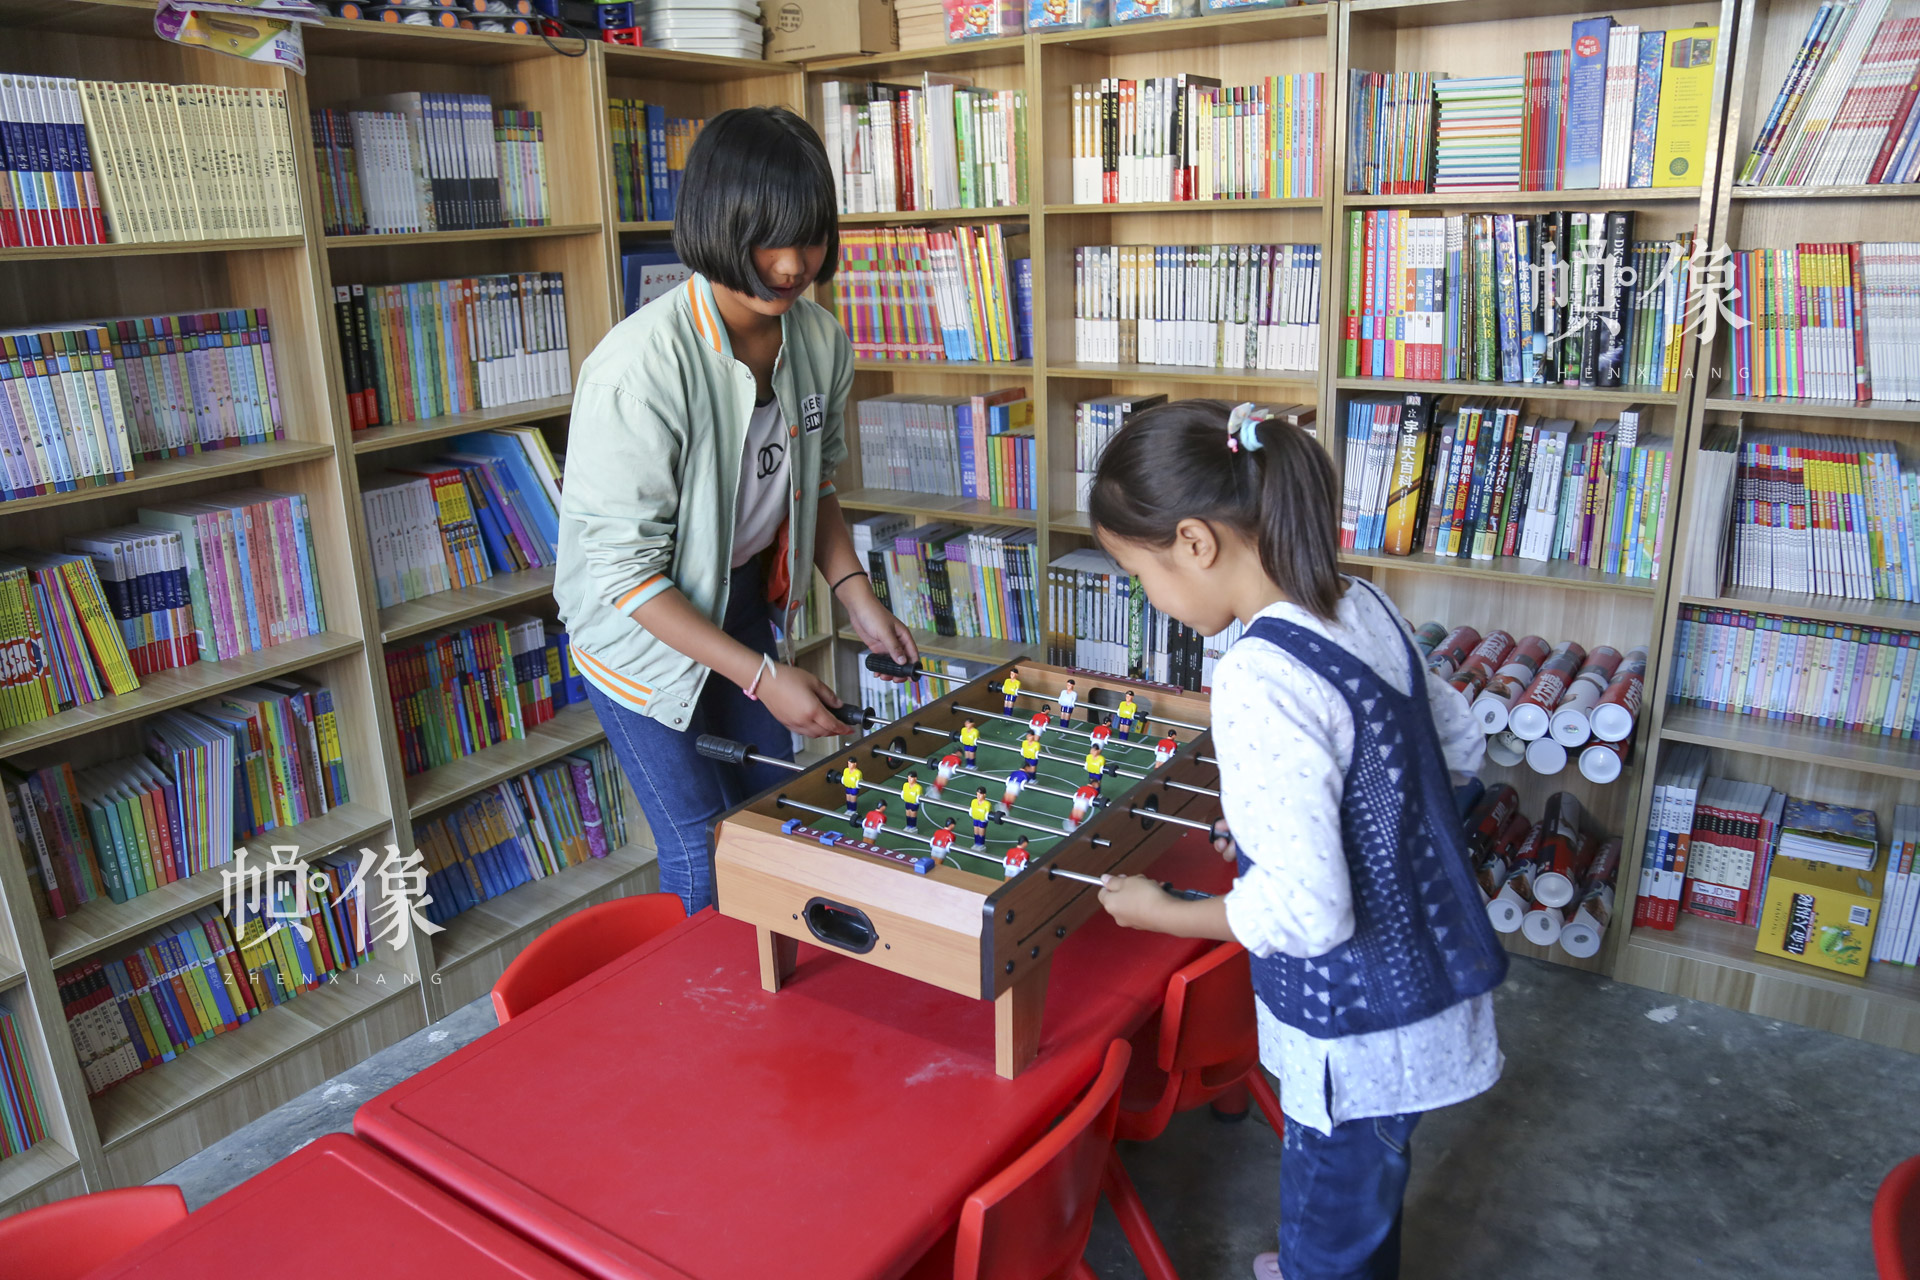 肖欢欢和金子涵在儿童快乐家园玩桌游。“这里有很多的图书，还有很多的玩具，每天都有很多的小朋友来这里玩，我就感到非常的开心、欢乐。”肖欢欢说。中国网记者 黄富友 摄